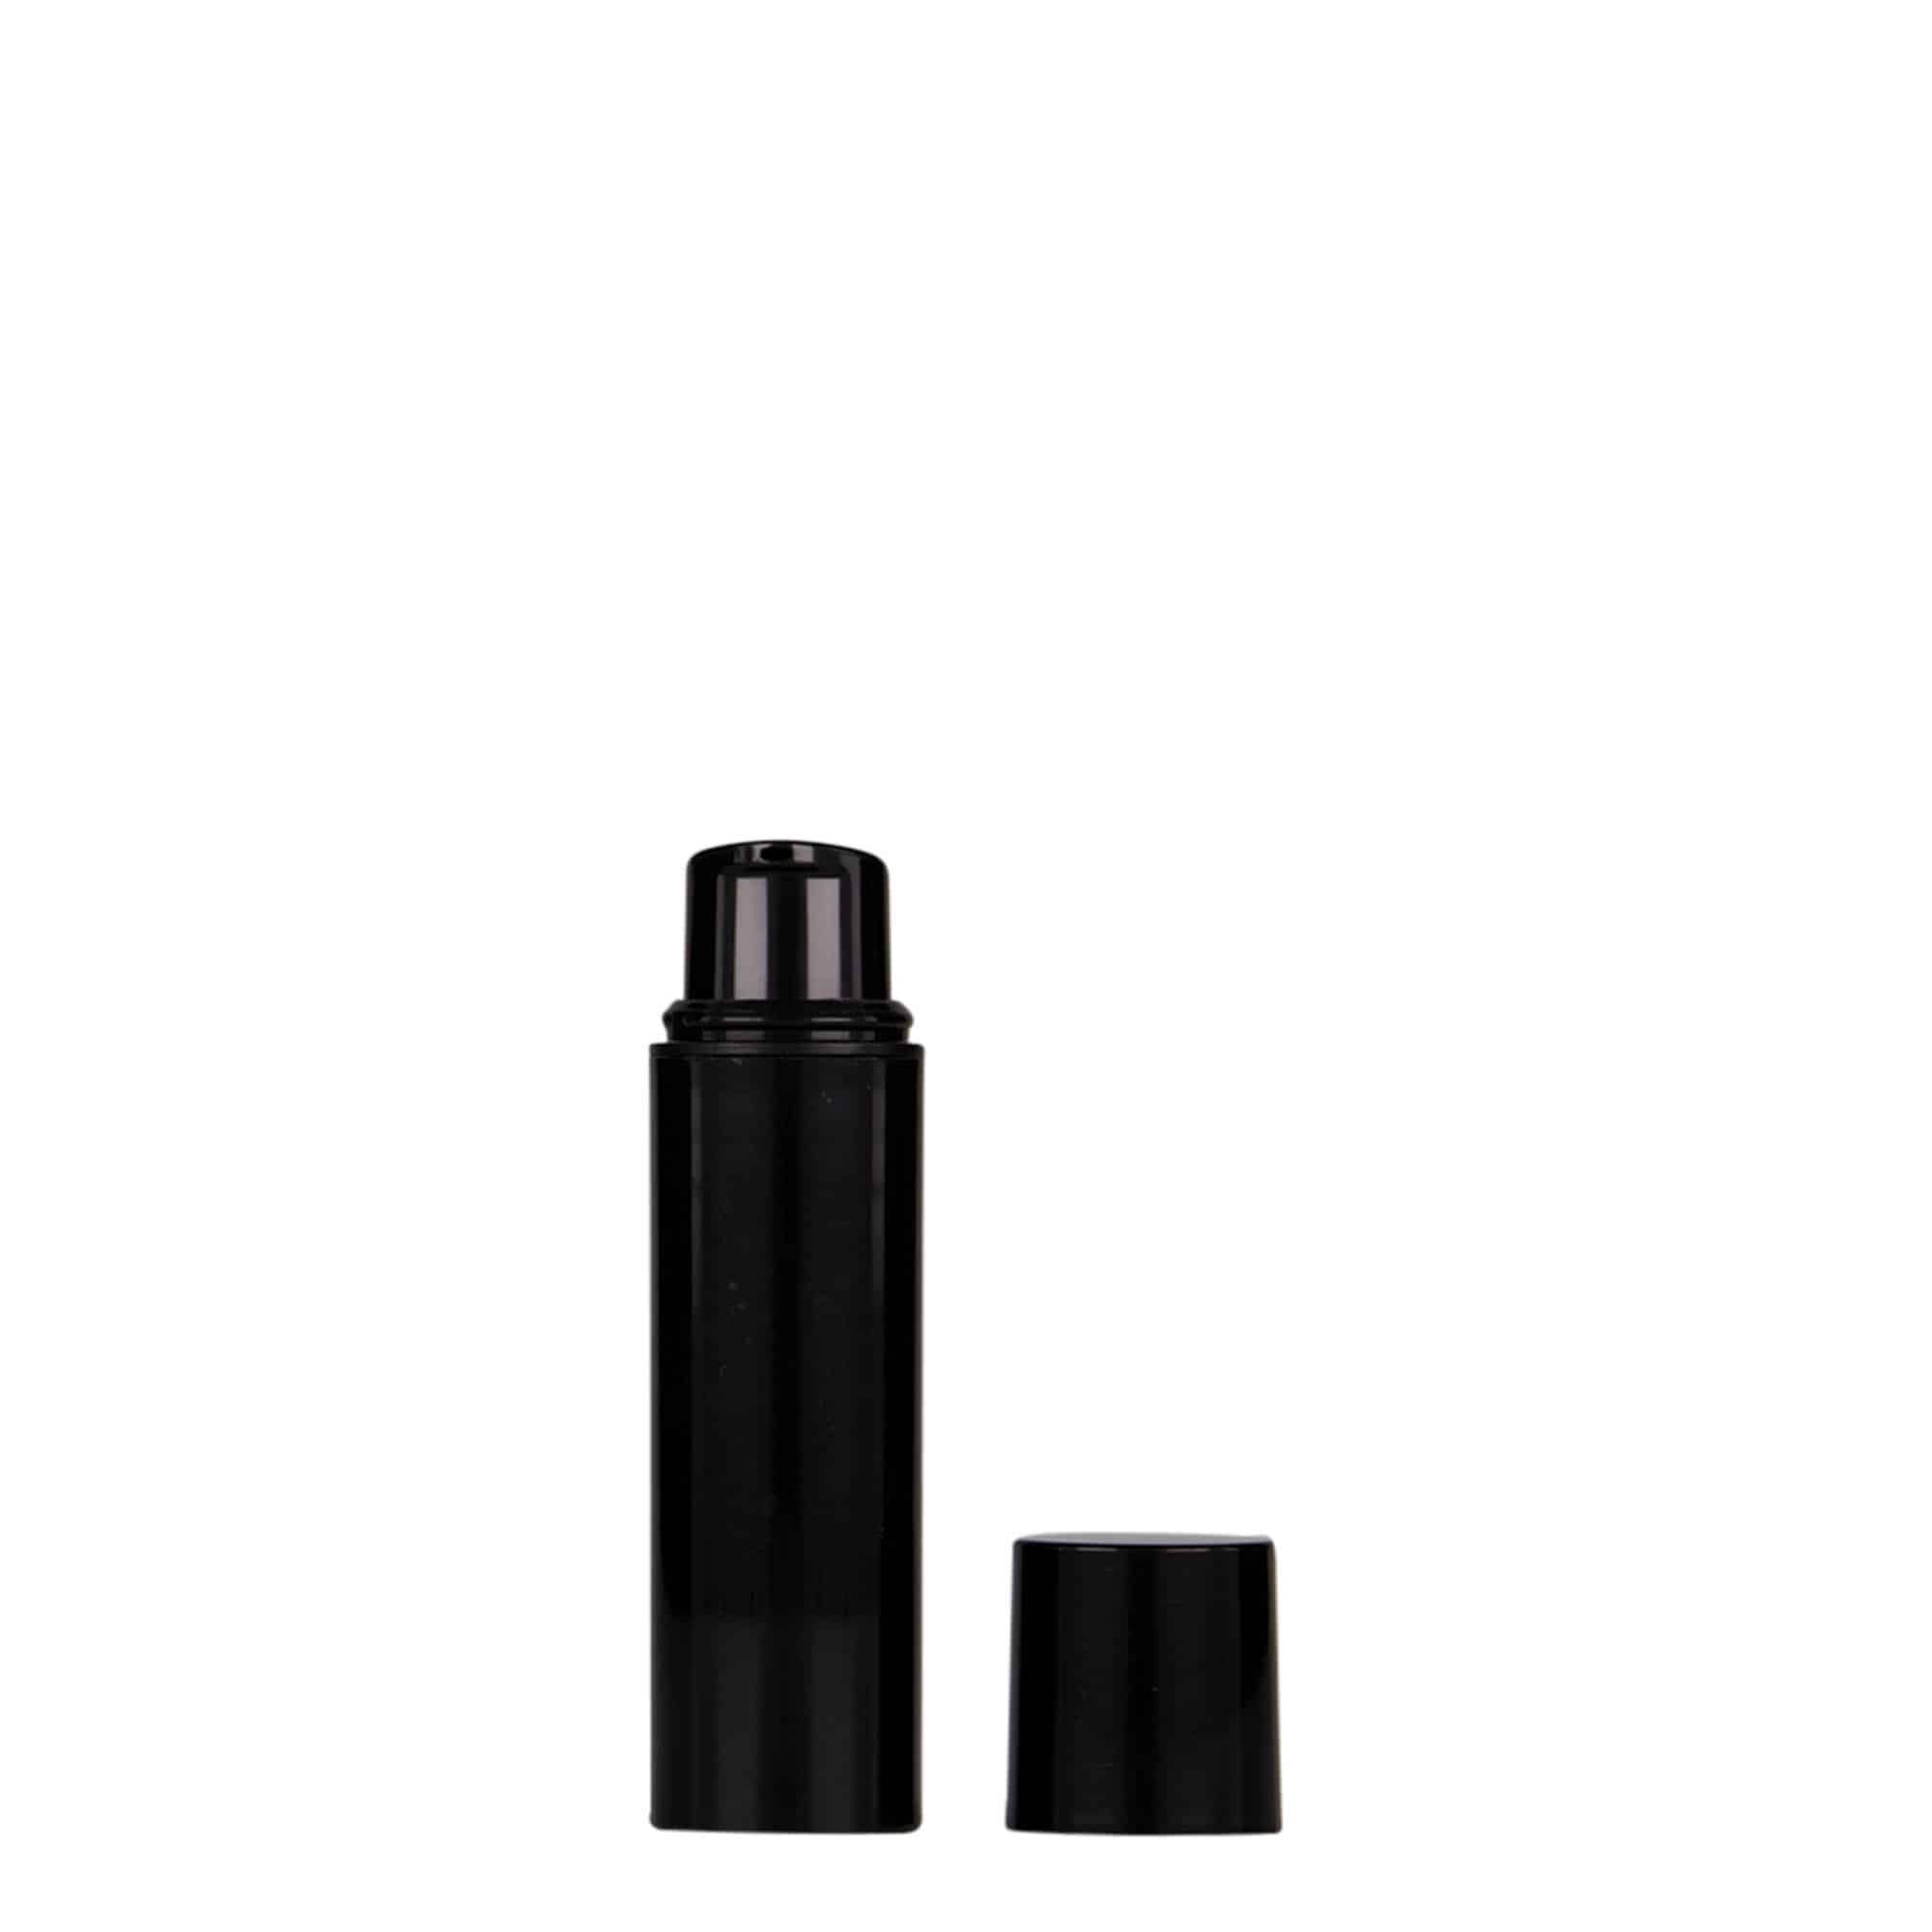 10 ml dozownik airless 'Nano', tworzywo sztuczne PP, kolor czarny